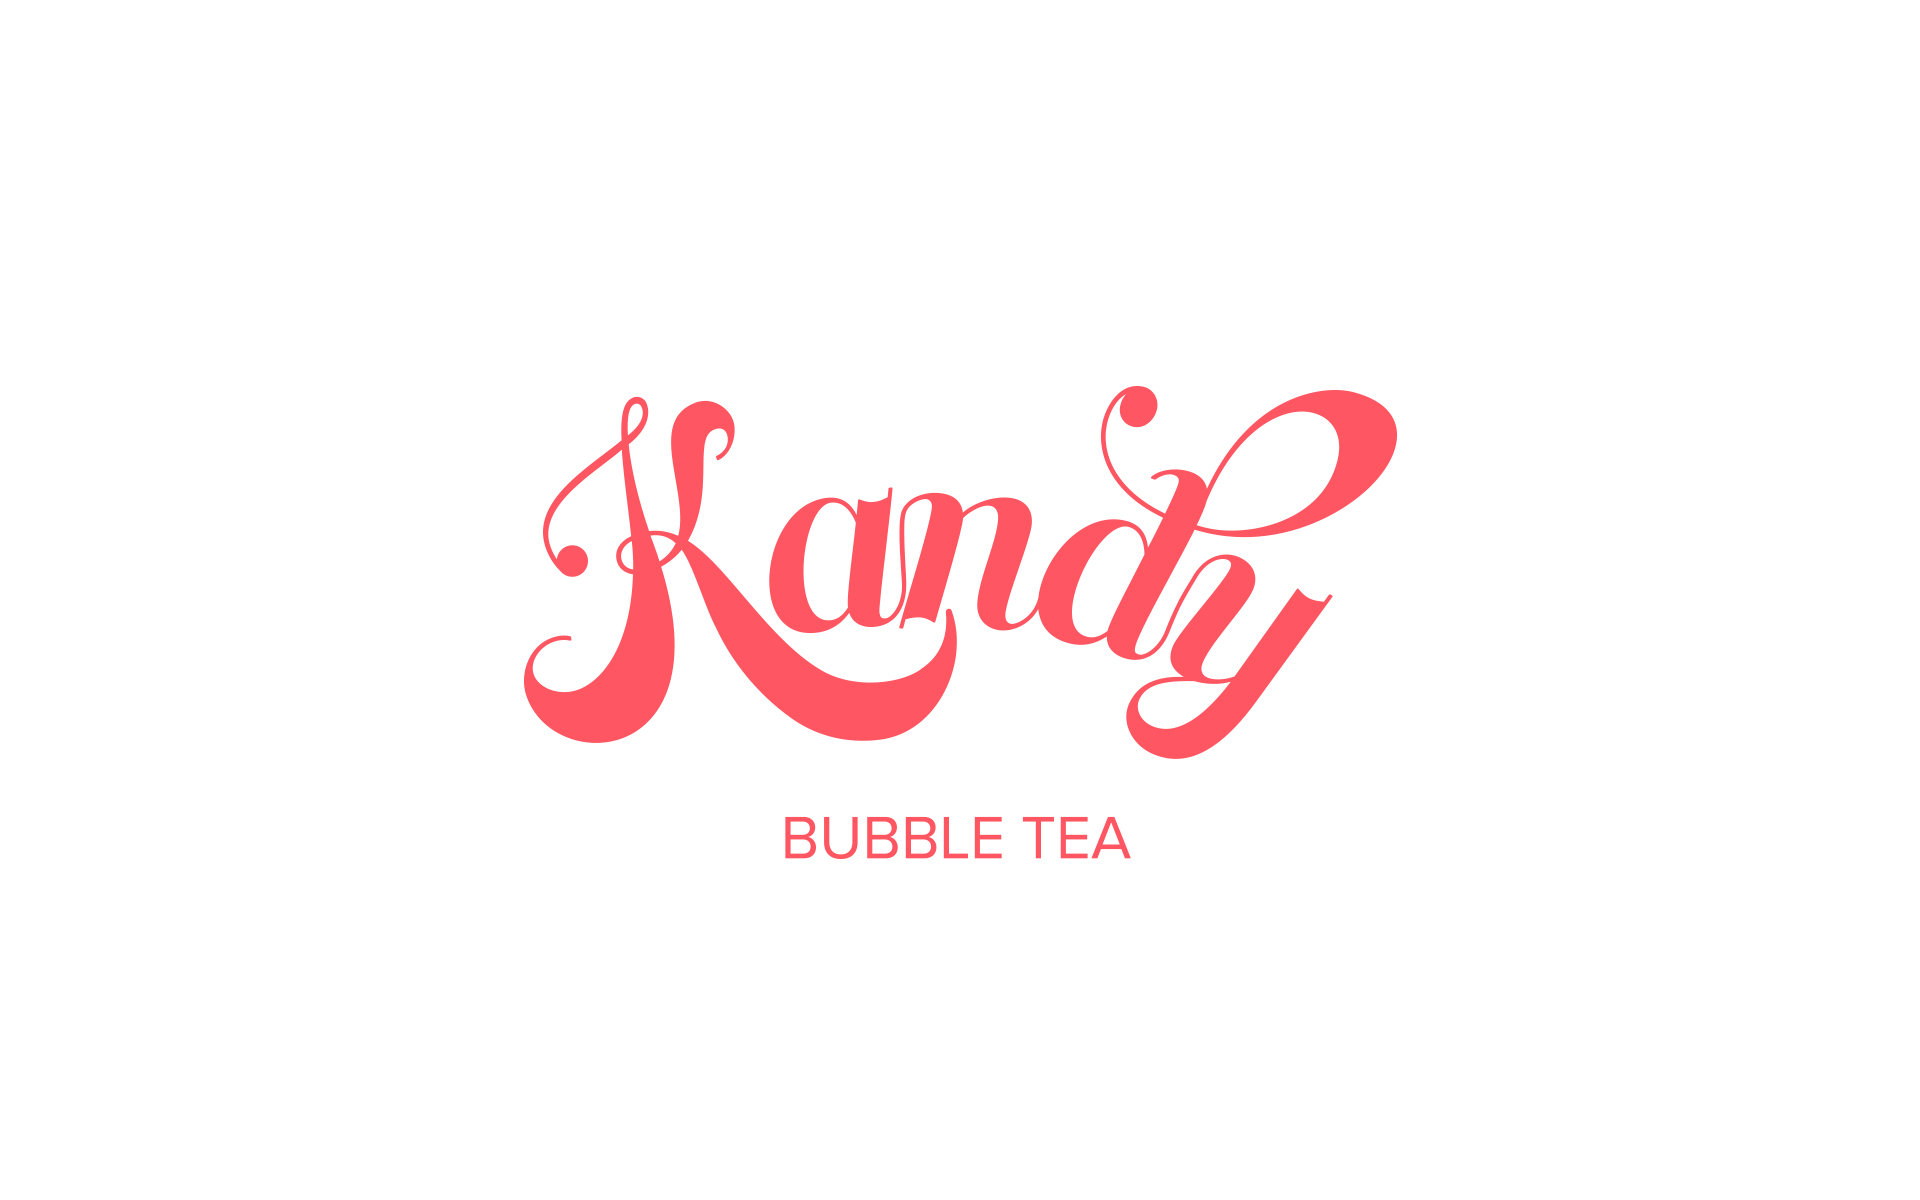 Kandy Bubble Tea